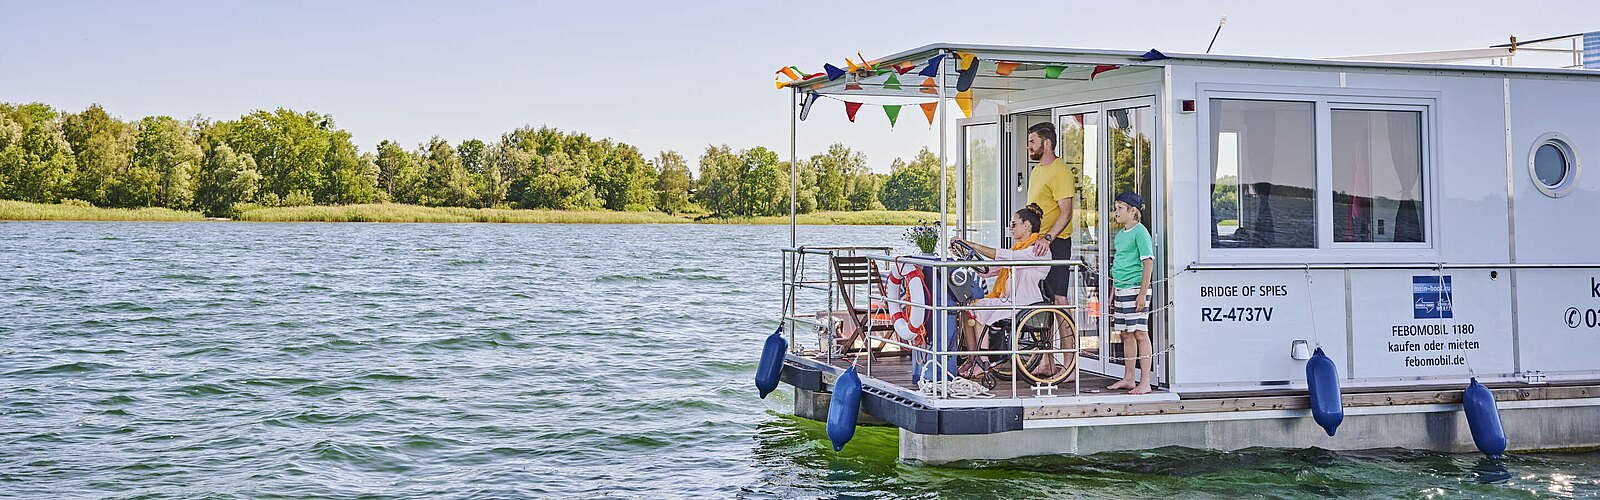 Rechlin Müritz Barrierefreier Urlaub mit der Familie auf dem Hausboot ,
        
    

        Foto: DZT/Jens Wegener